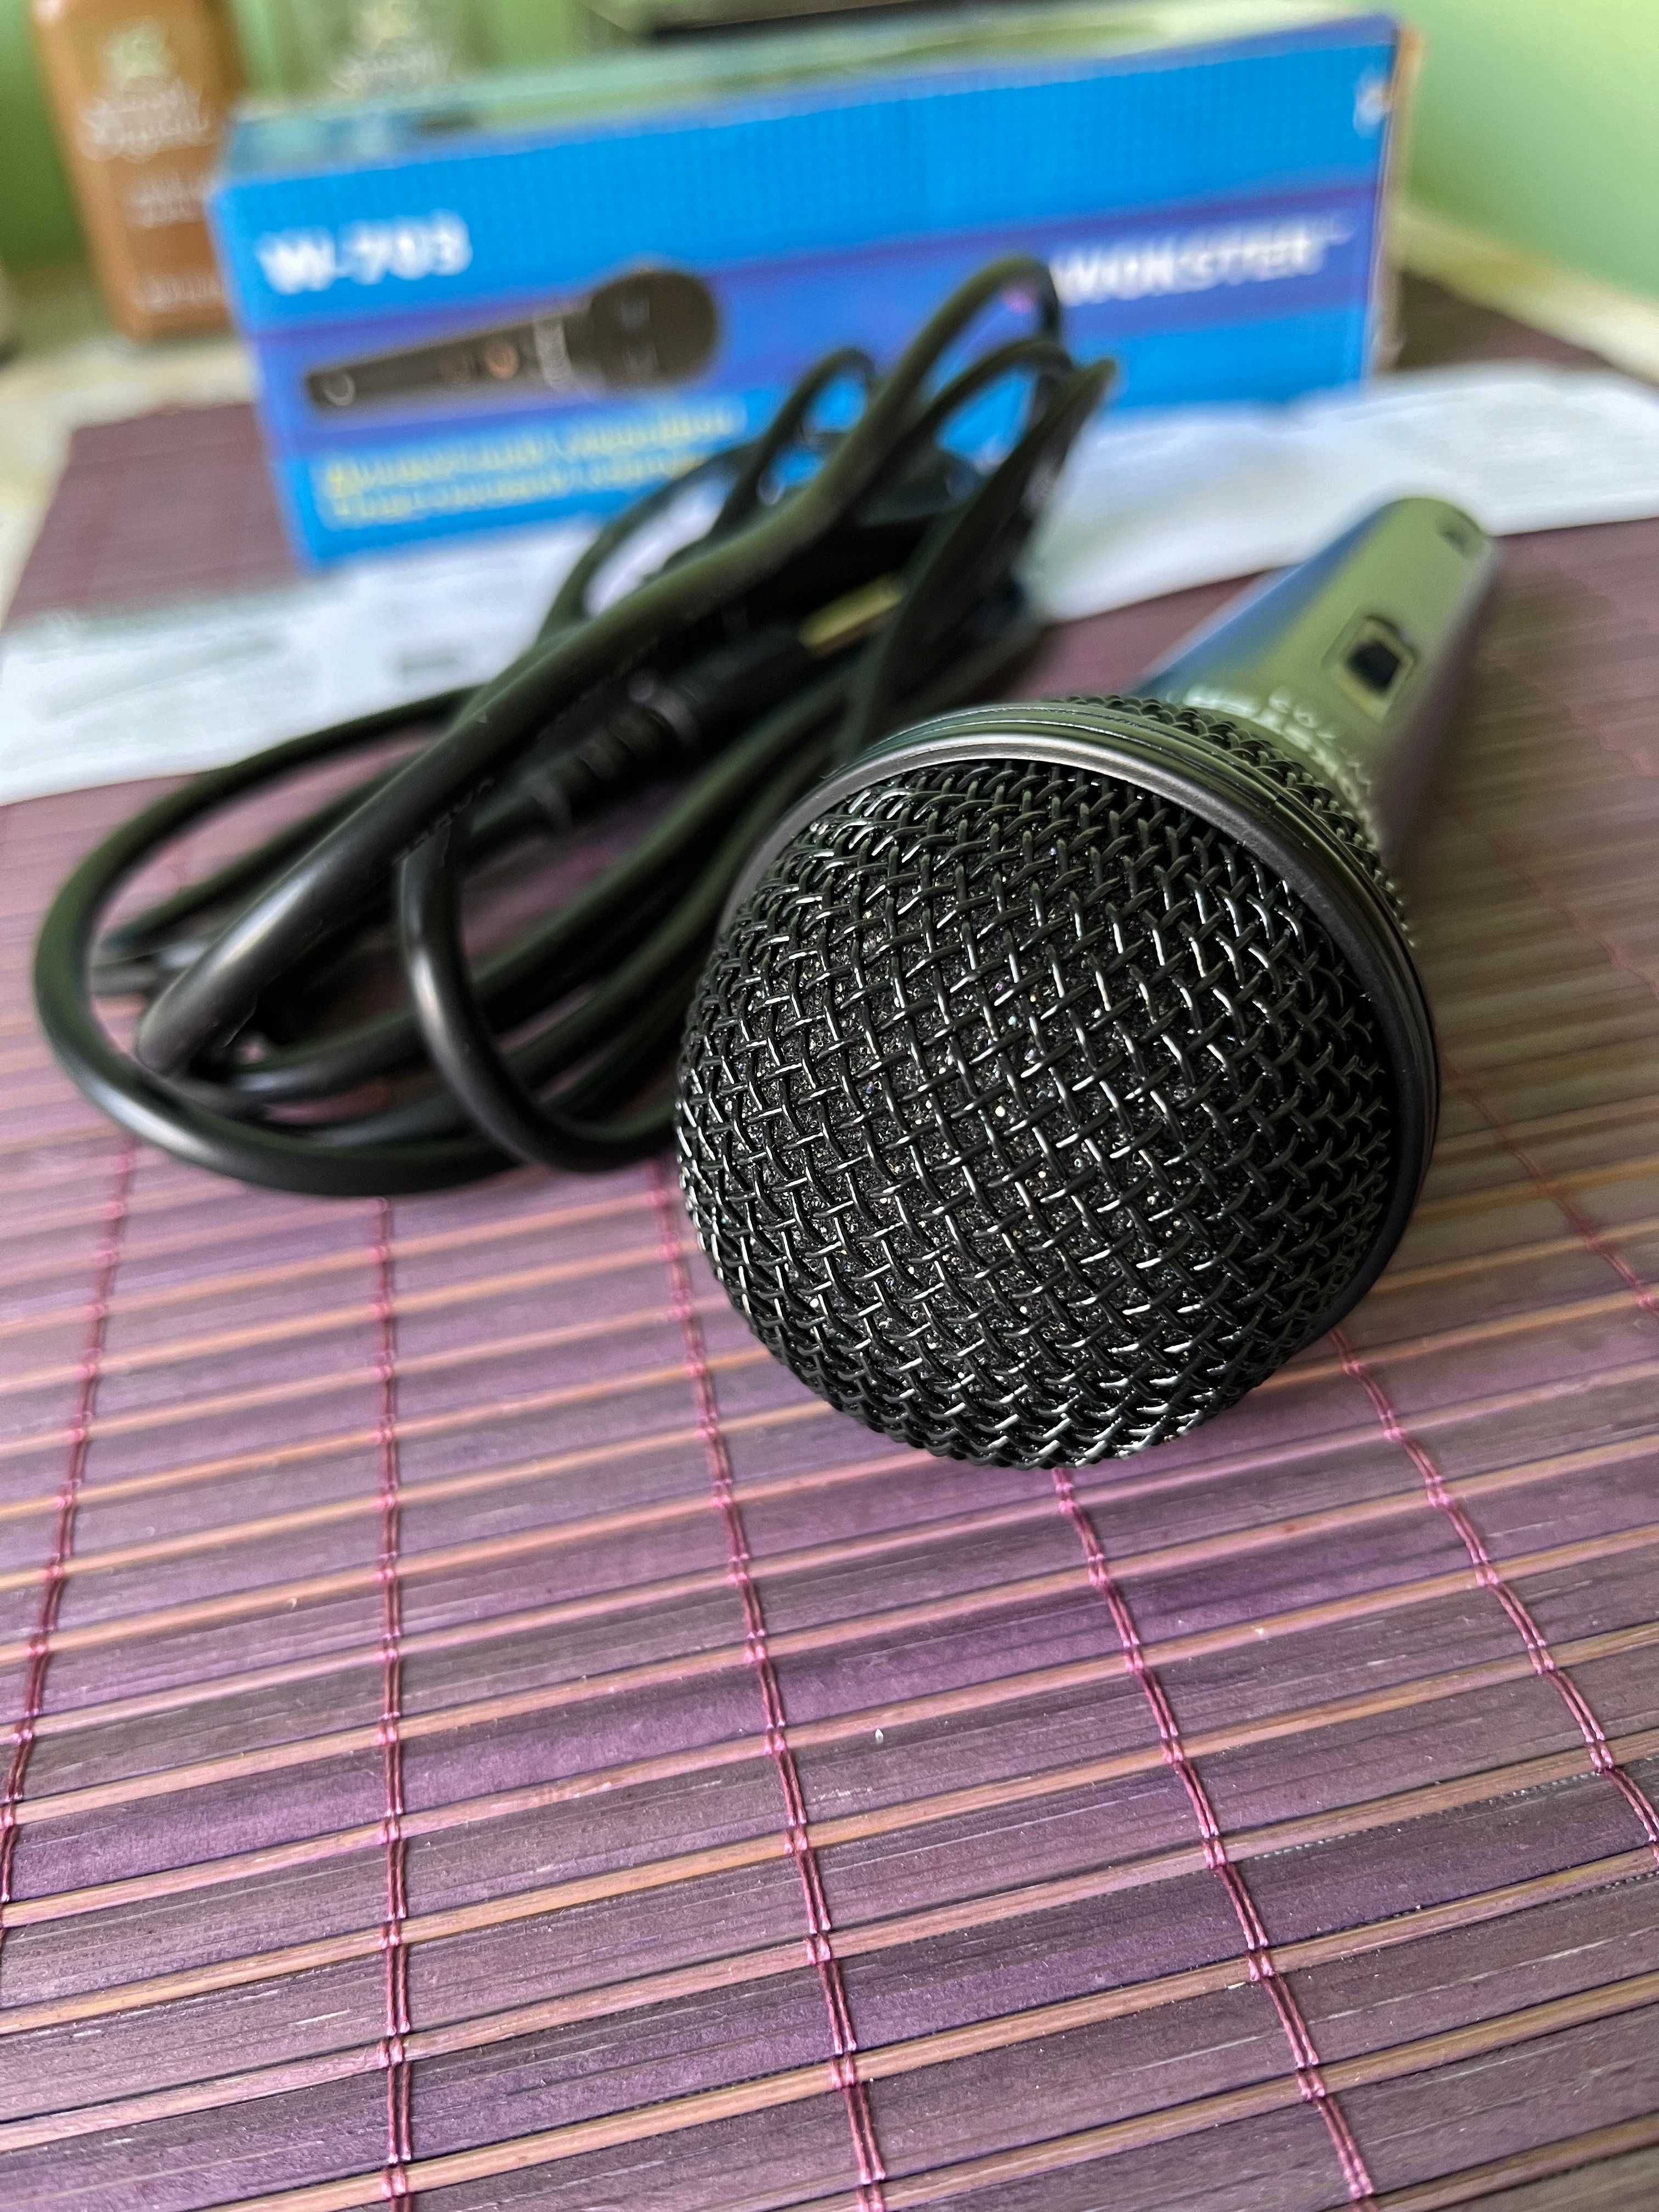 Качественный динамический микрофон - Новый, в упаковке!